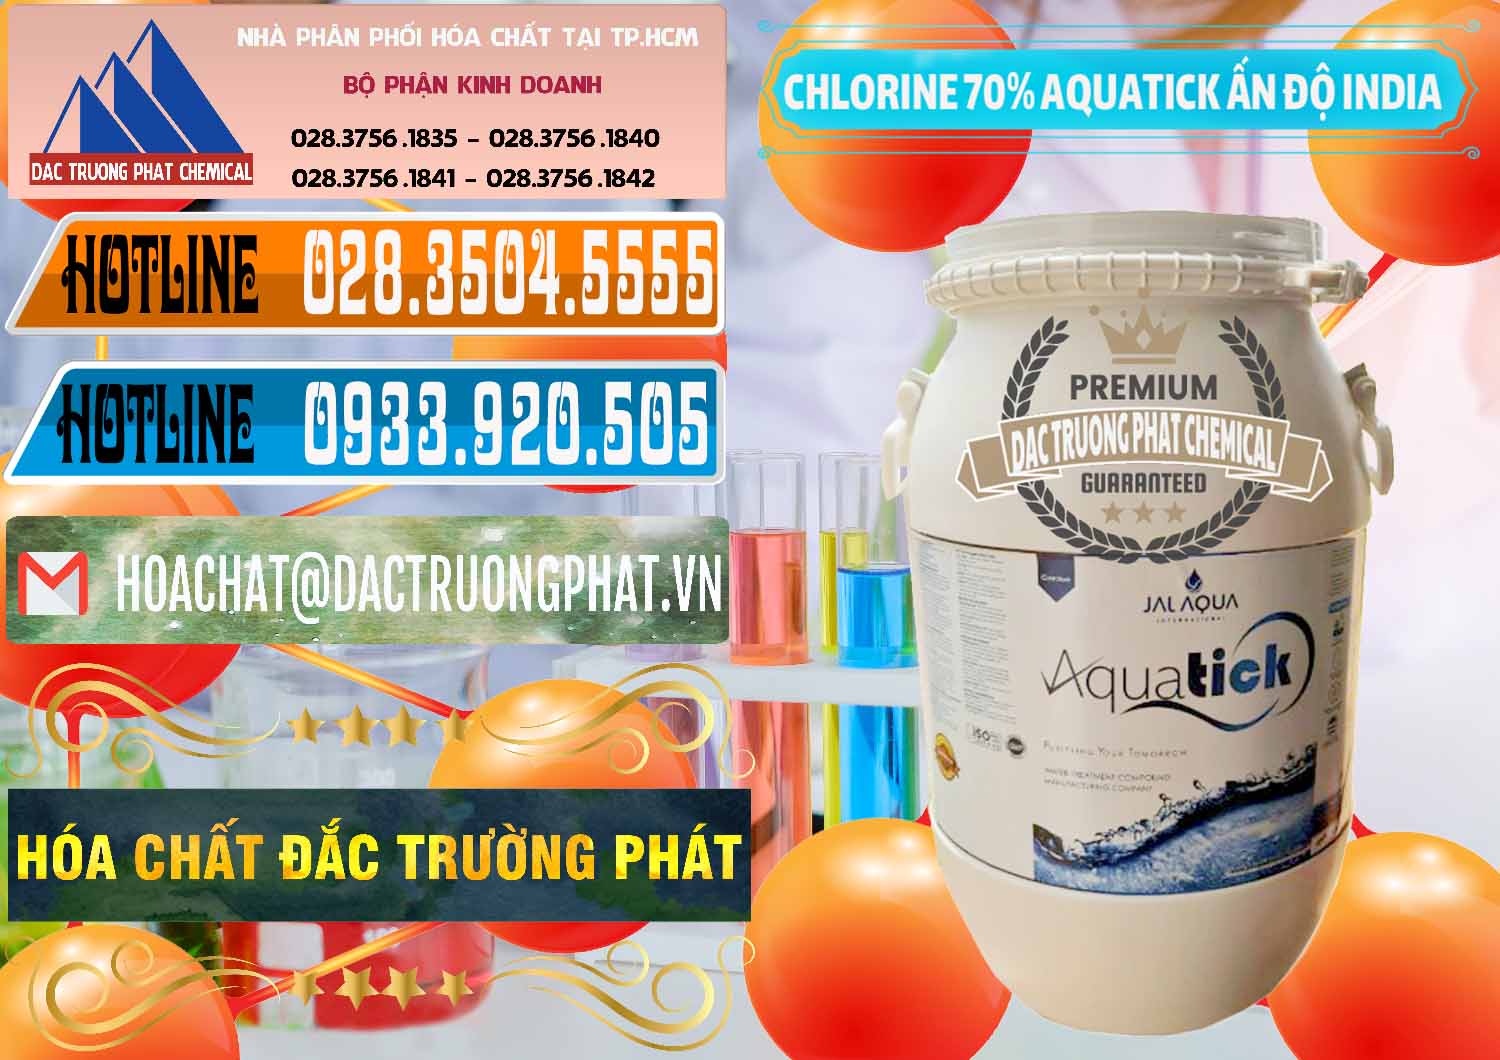 Chuyên cung cấp _ bán Chlorine – Clorin 70% Aquatick Jal Aqua Ấn Độ India - 0215 - Chuyên phân phối - bán hóa chất tại TP.HCM - stmp.net